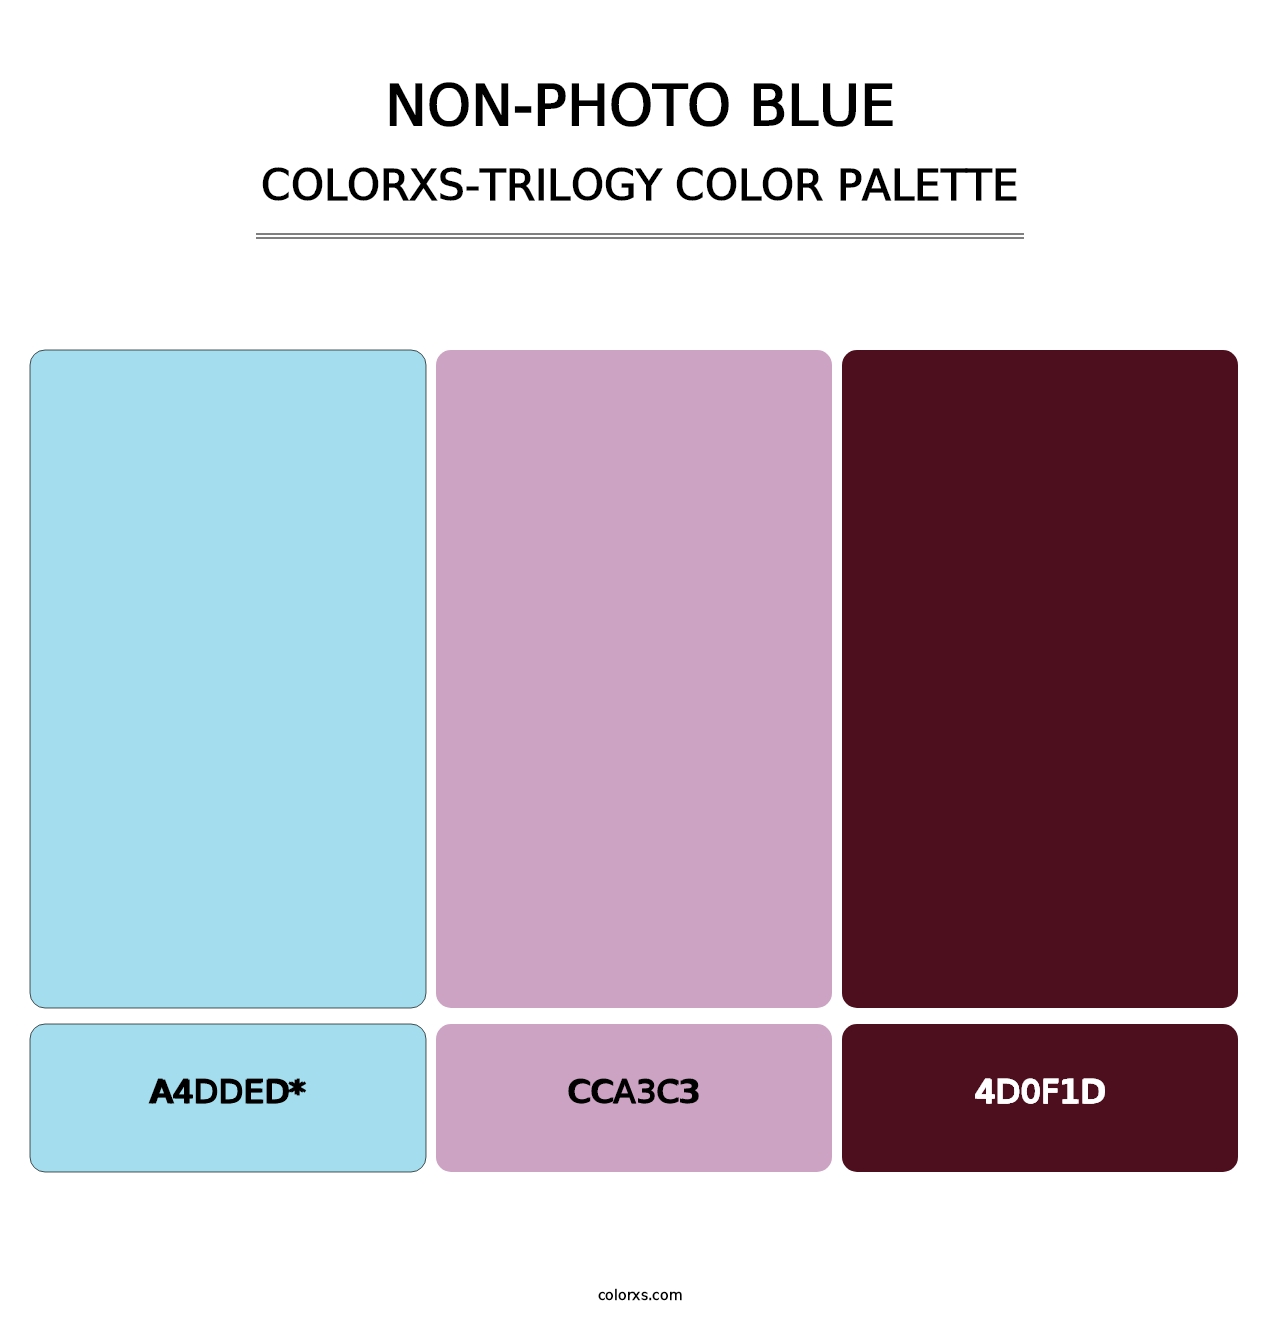 Non-photo Blue - Colorxs Trilogy Palette